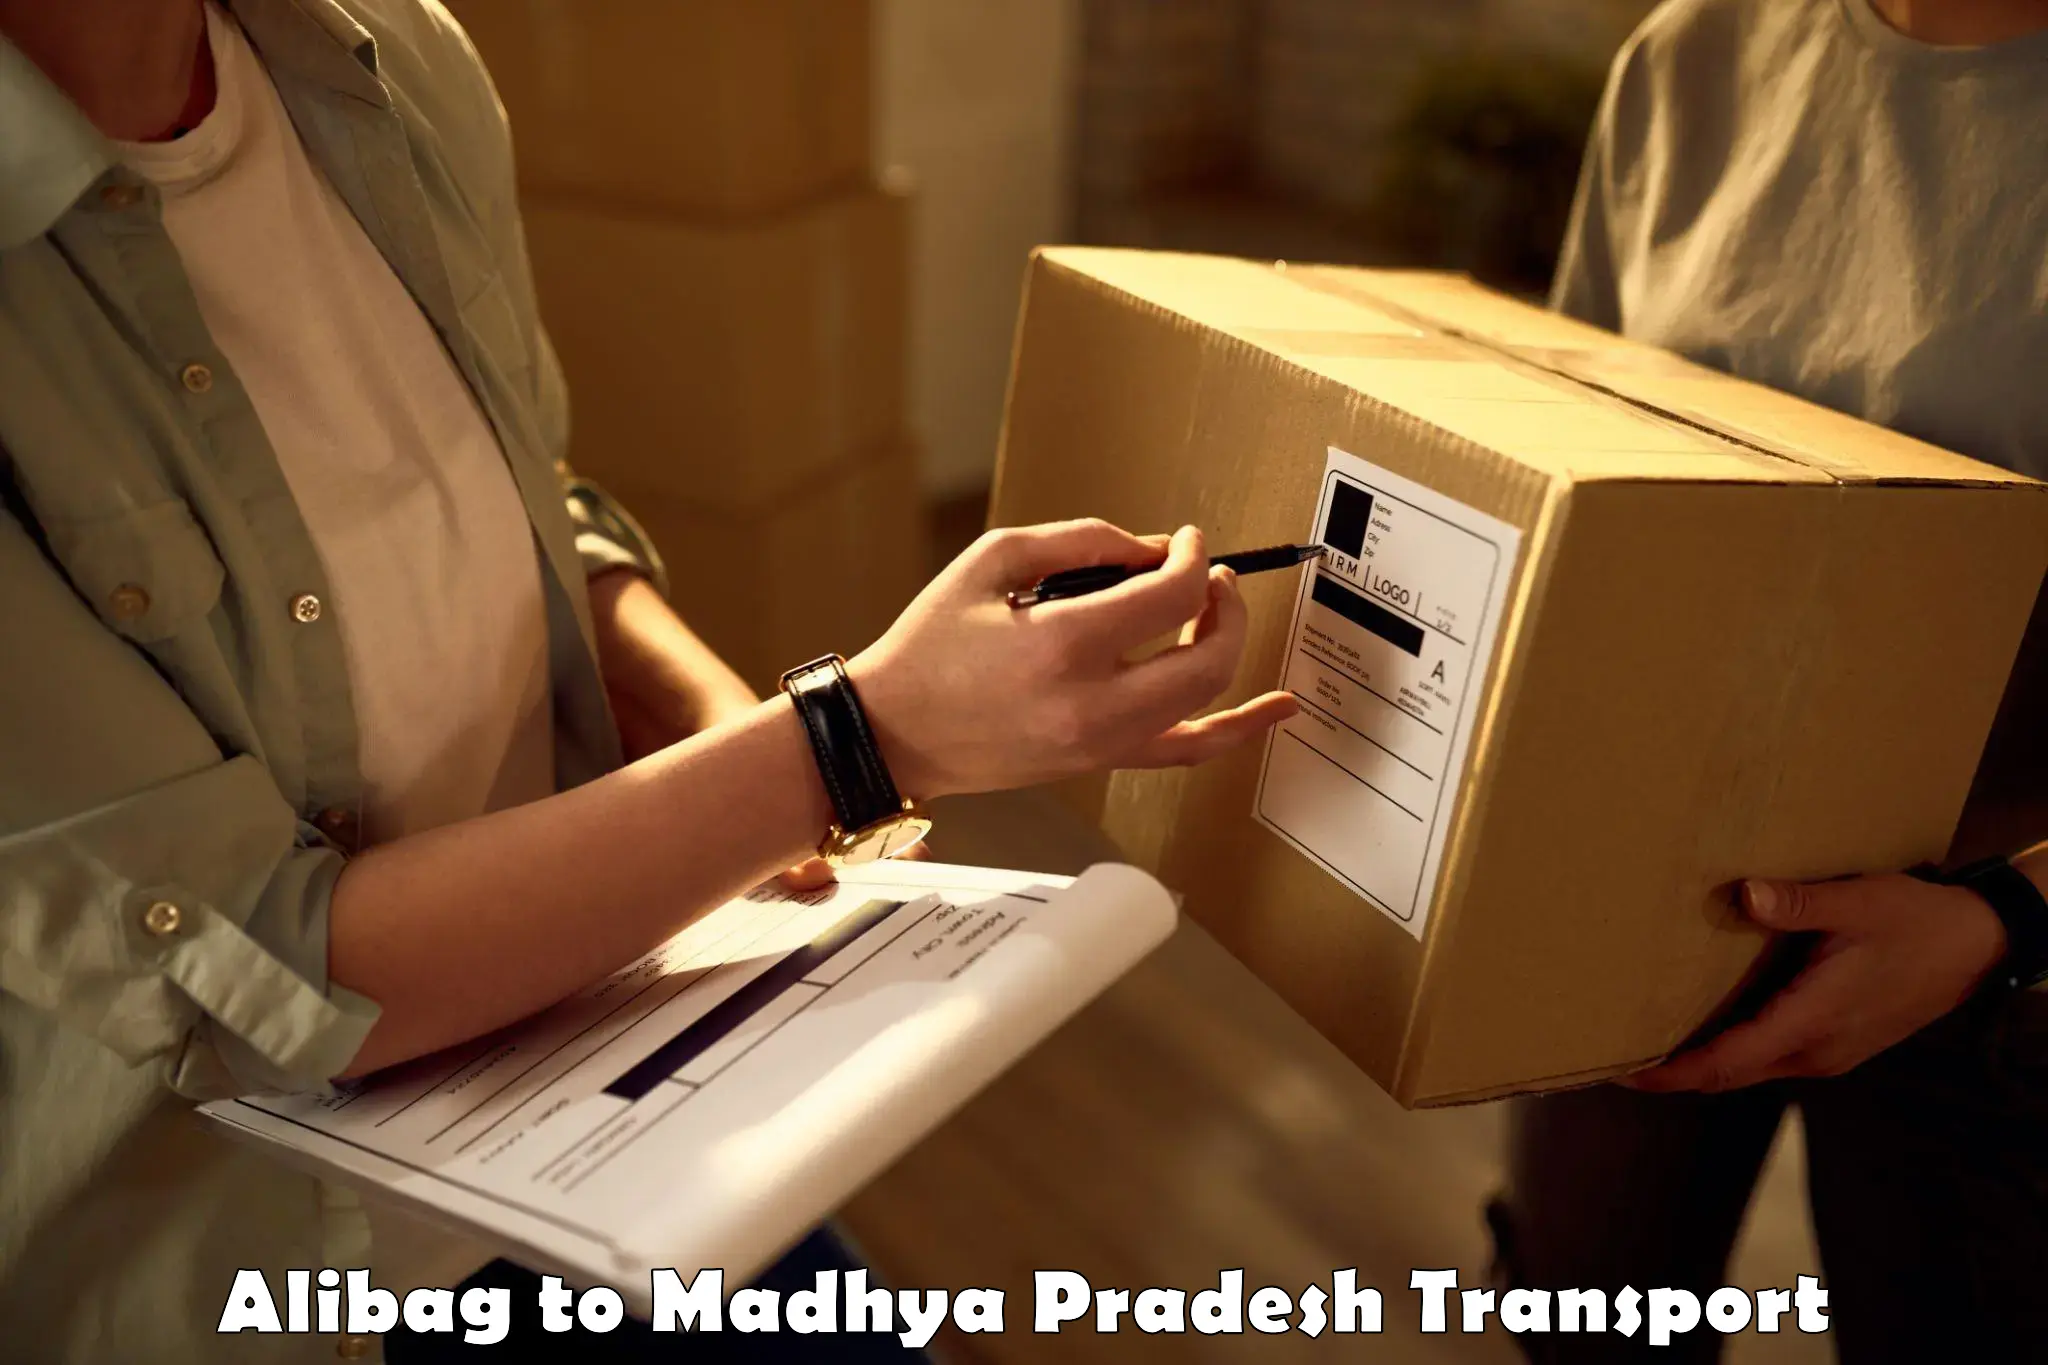 Goods delivery service Alibag to Dewas